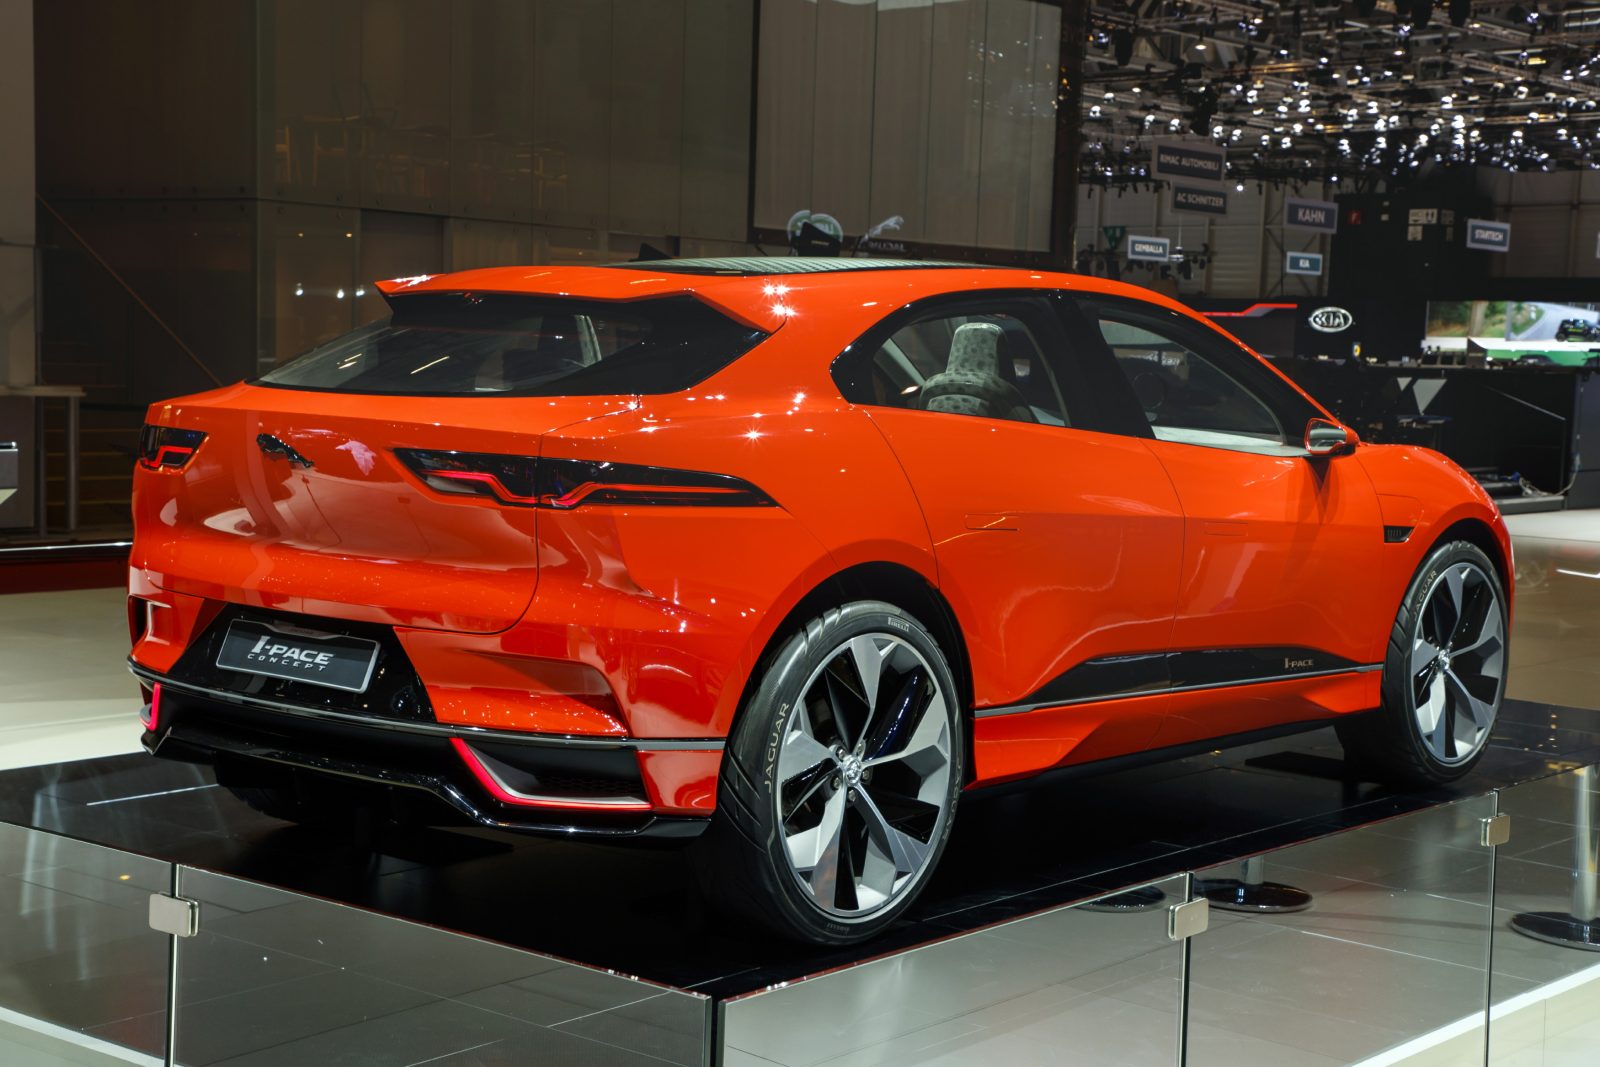 Jaguar I Pace Concept Le Superbe SUV lectrique Expos Gen ve